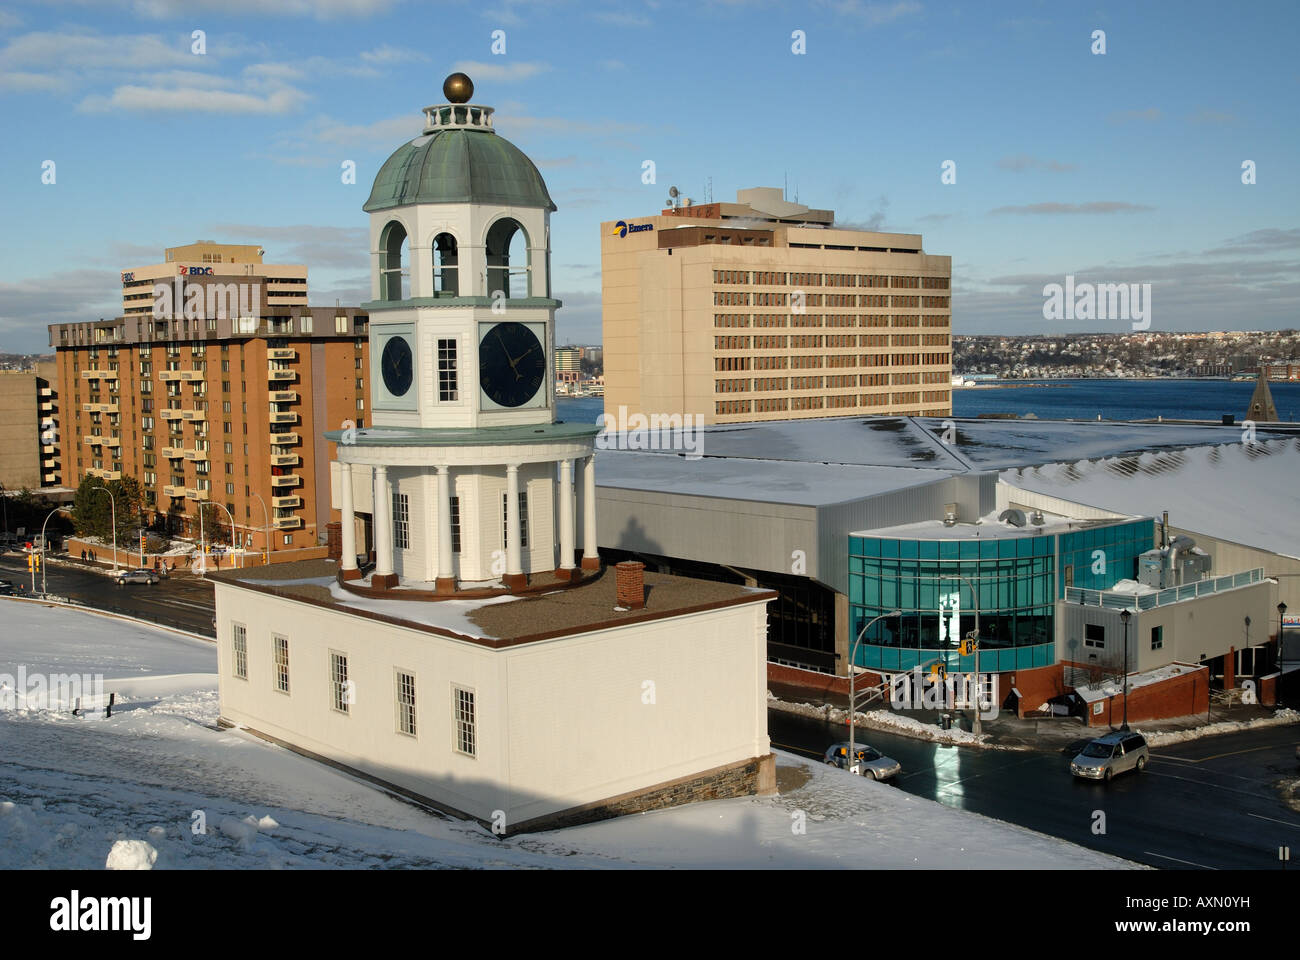 La tour de l'horloge et édifices du centre-ville, Halifax, Nouvelle-Écosse Banque D'Images